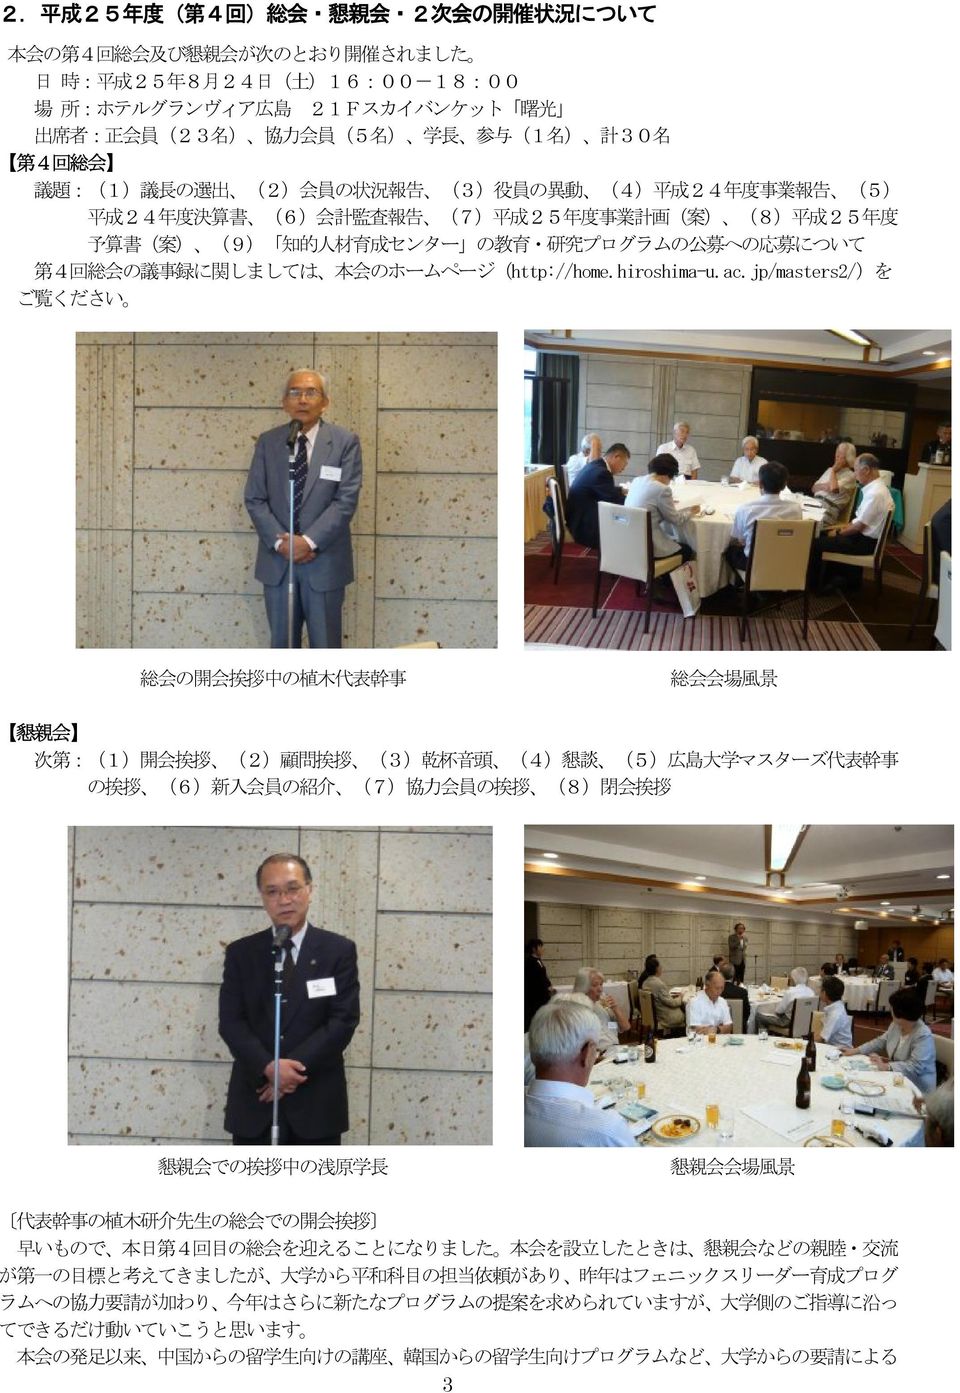 予 算 書 ( 案 ) (9) 知 的 人 材 育 成 センター の 教 育 研 究 プログラムの 公 募 への 応 募 について 第 4 回 総 会 の 議 事 録 に 関 しましては 本 会 のホームページ(http://home.hiroshima-u.ac.